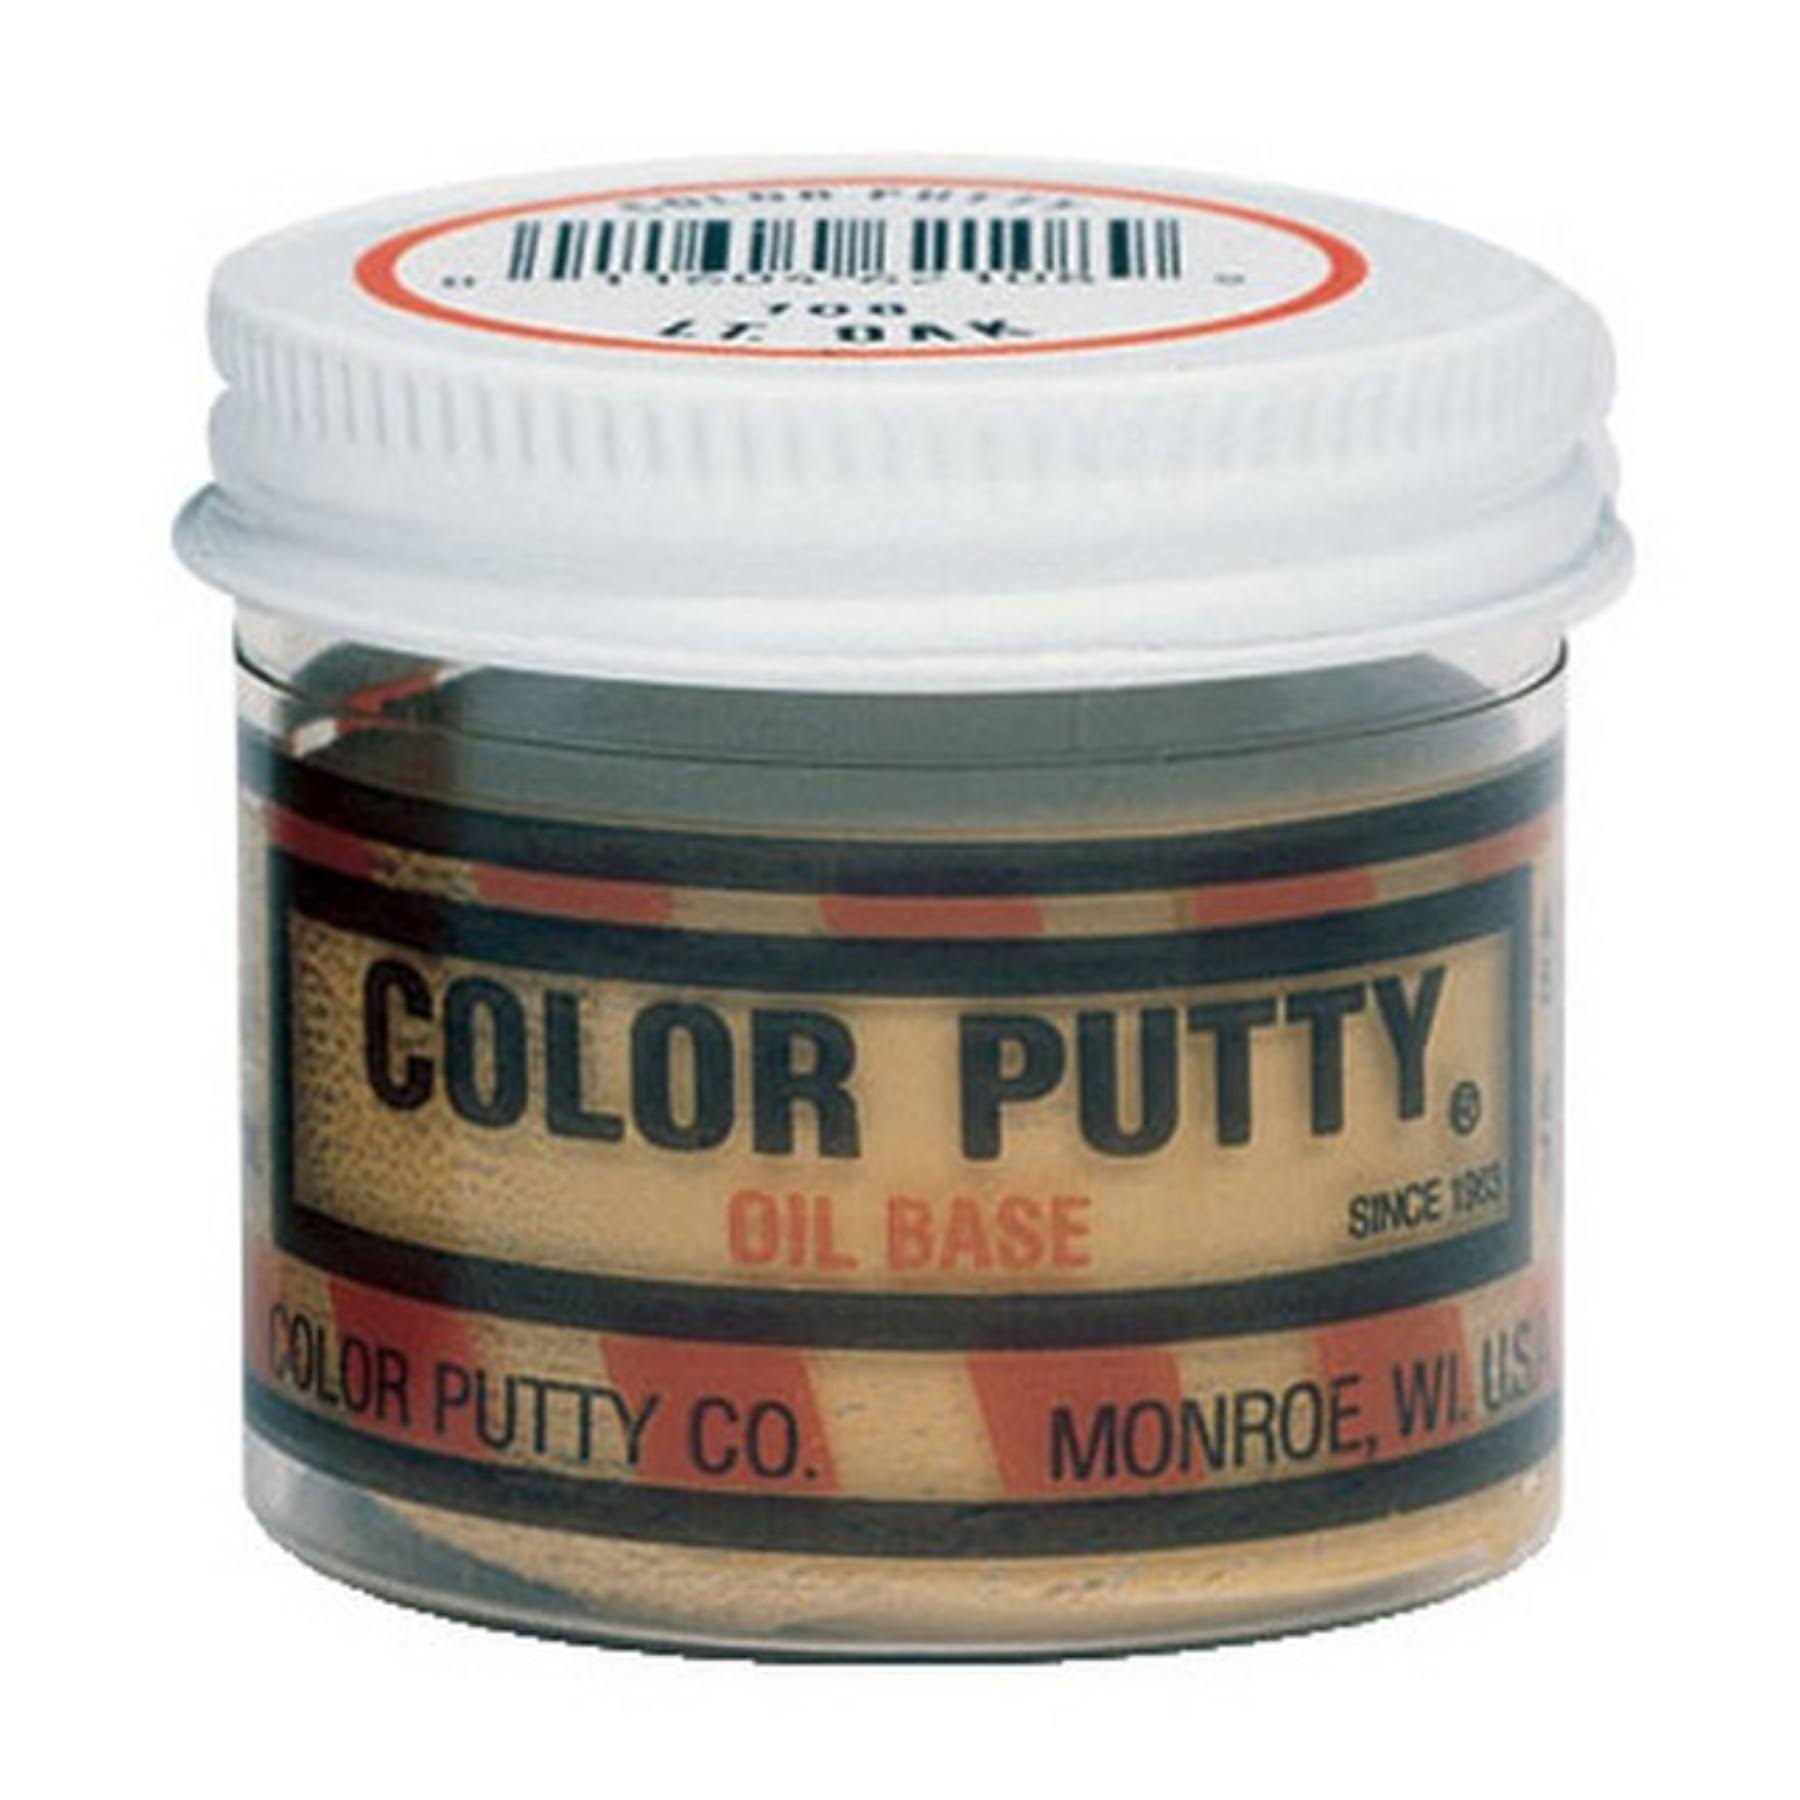 Color Putty 102 Oil-based Wood Filler, 3.68 oz Jar